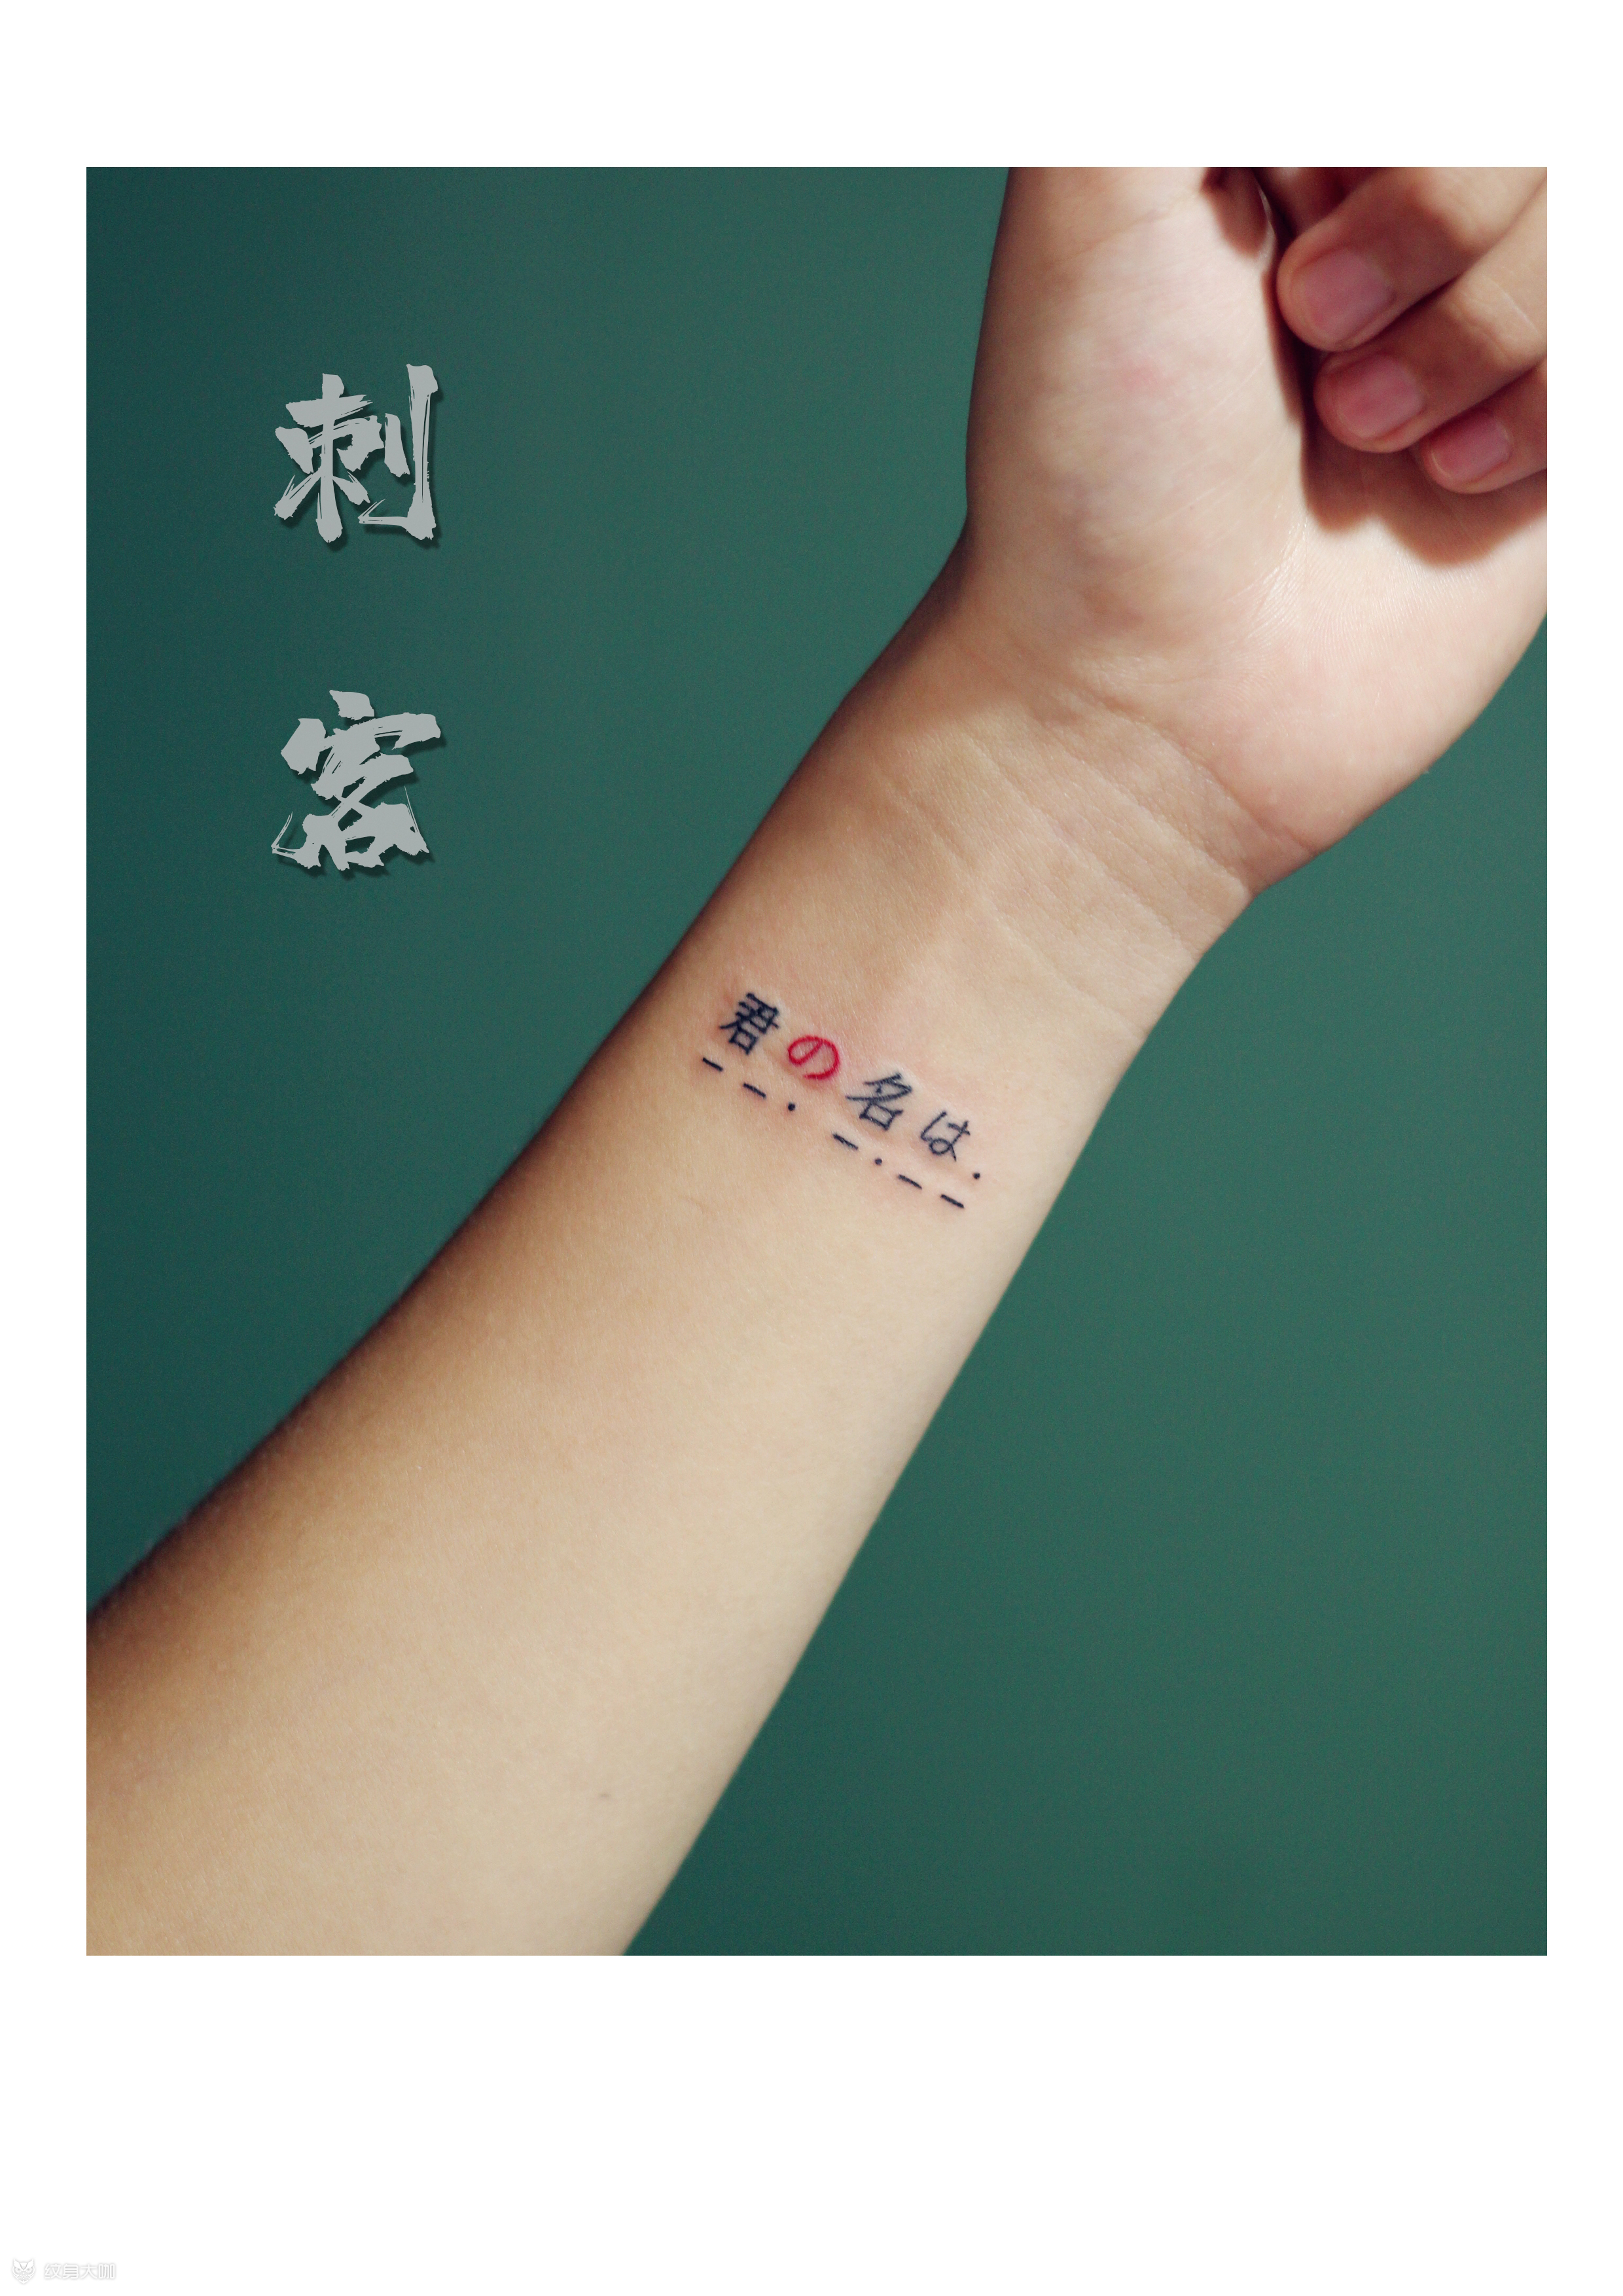 纹身名字设计图案中文图片